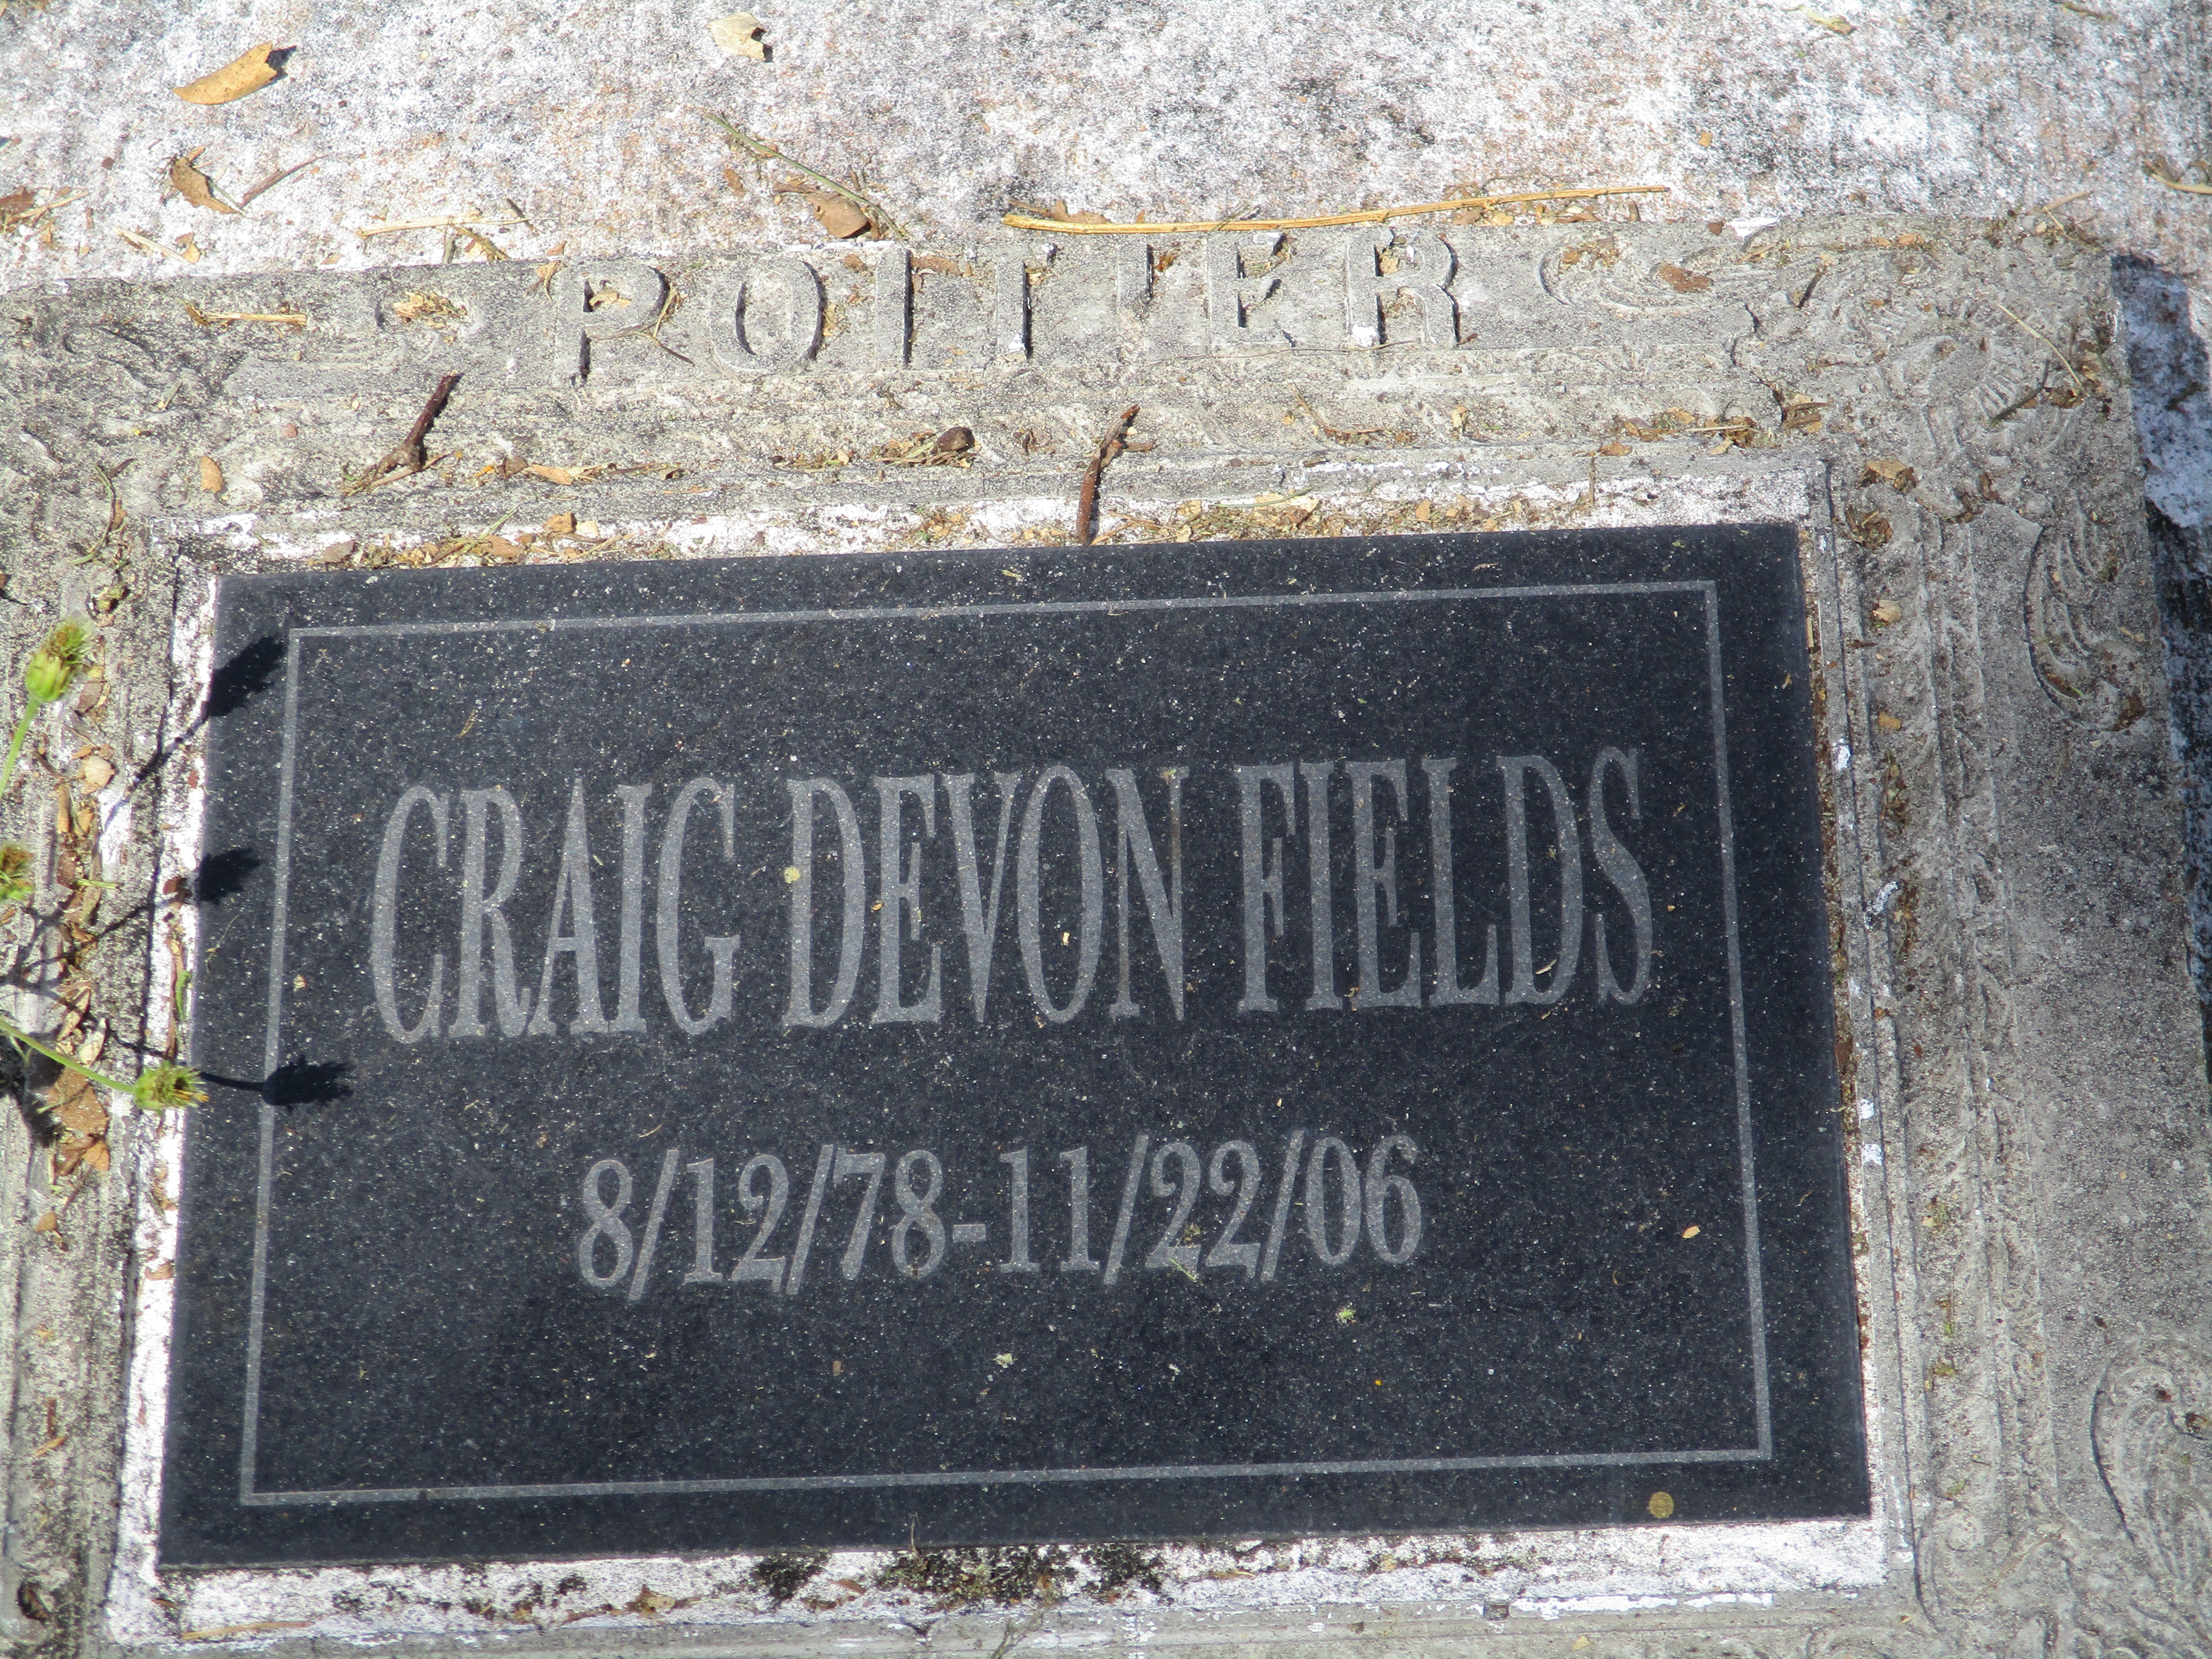 Craig Devon Fields